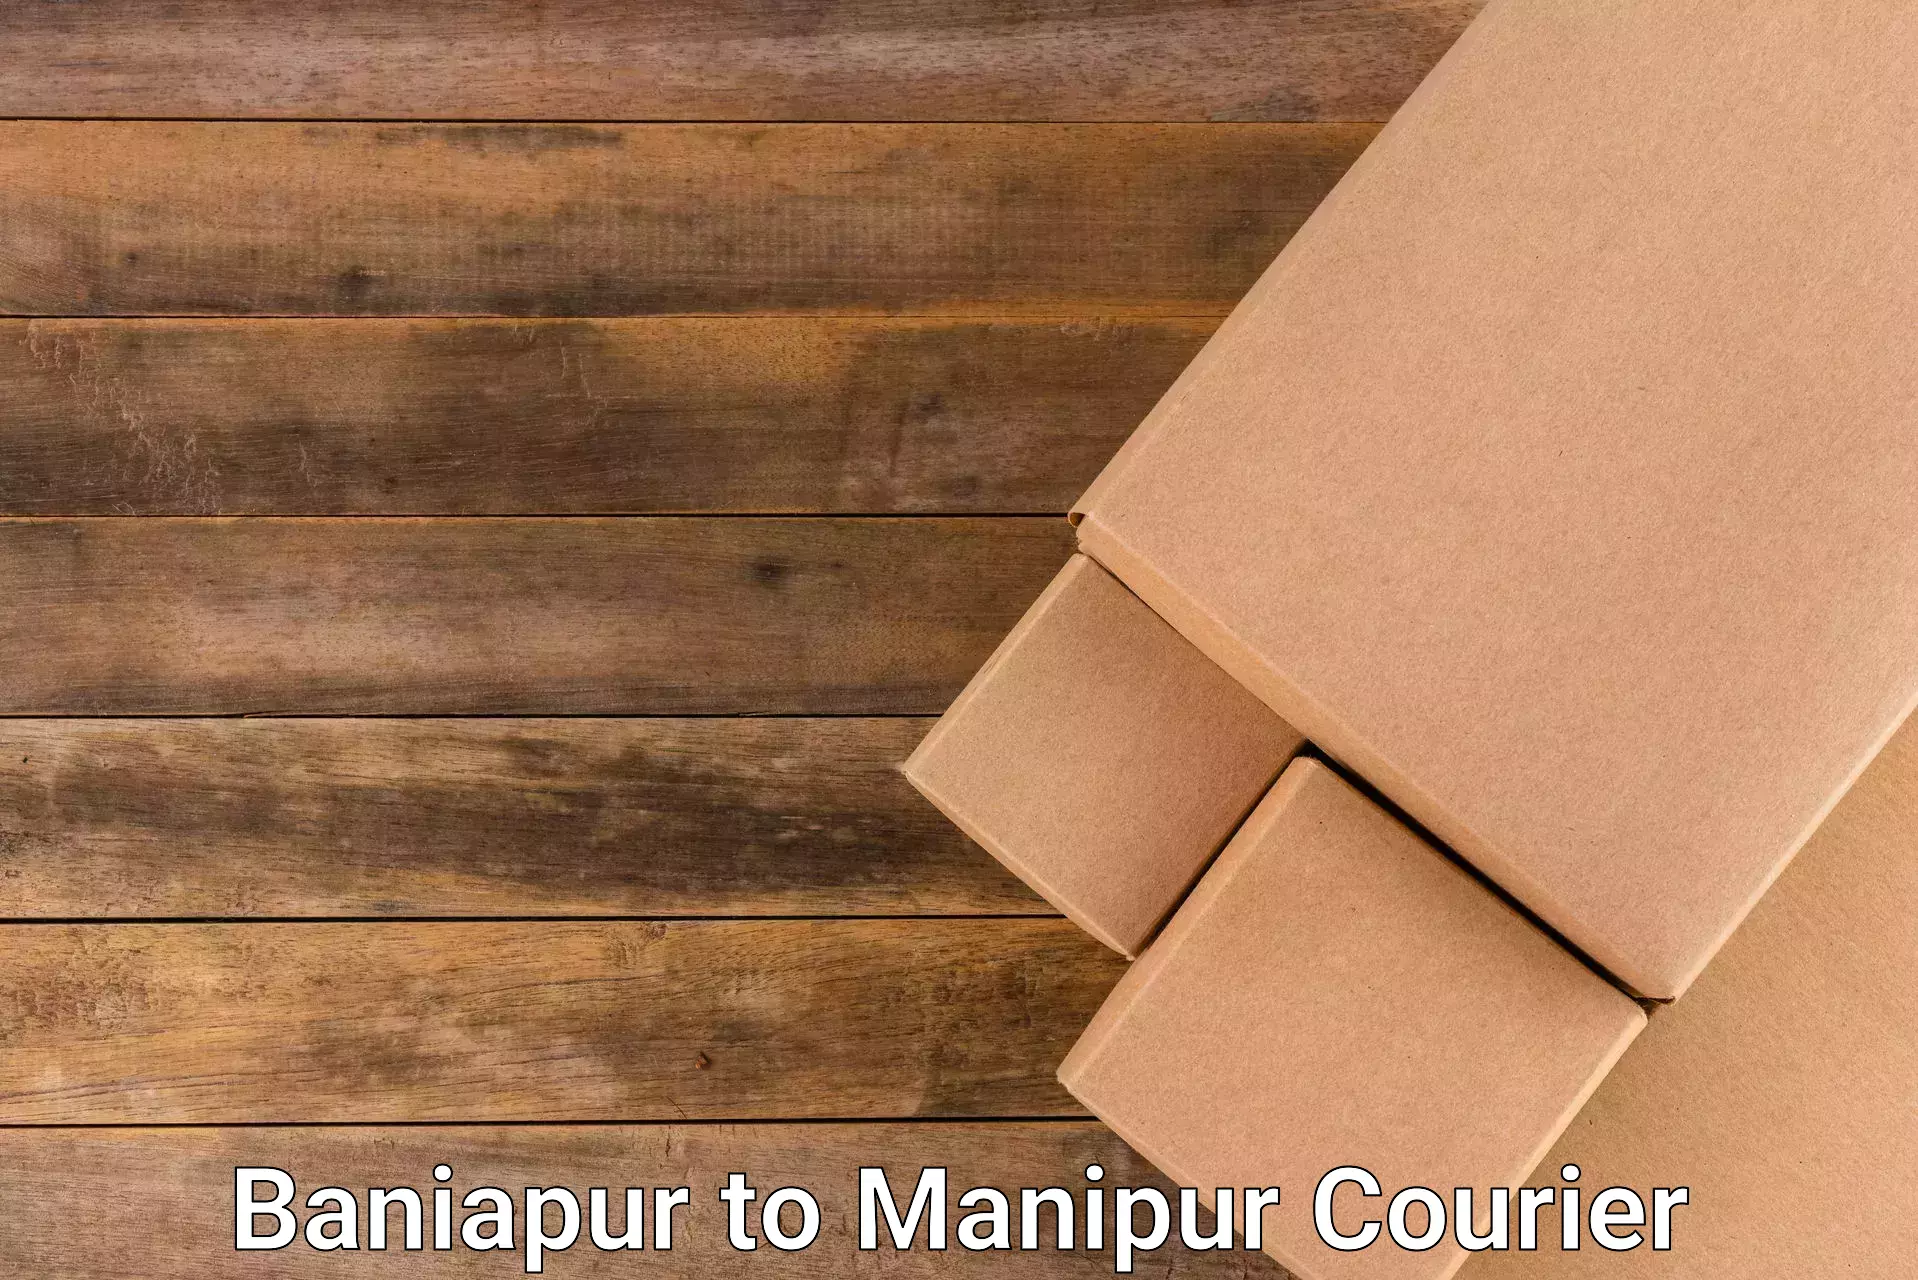 Regular parcel service Baniapur to Manipur